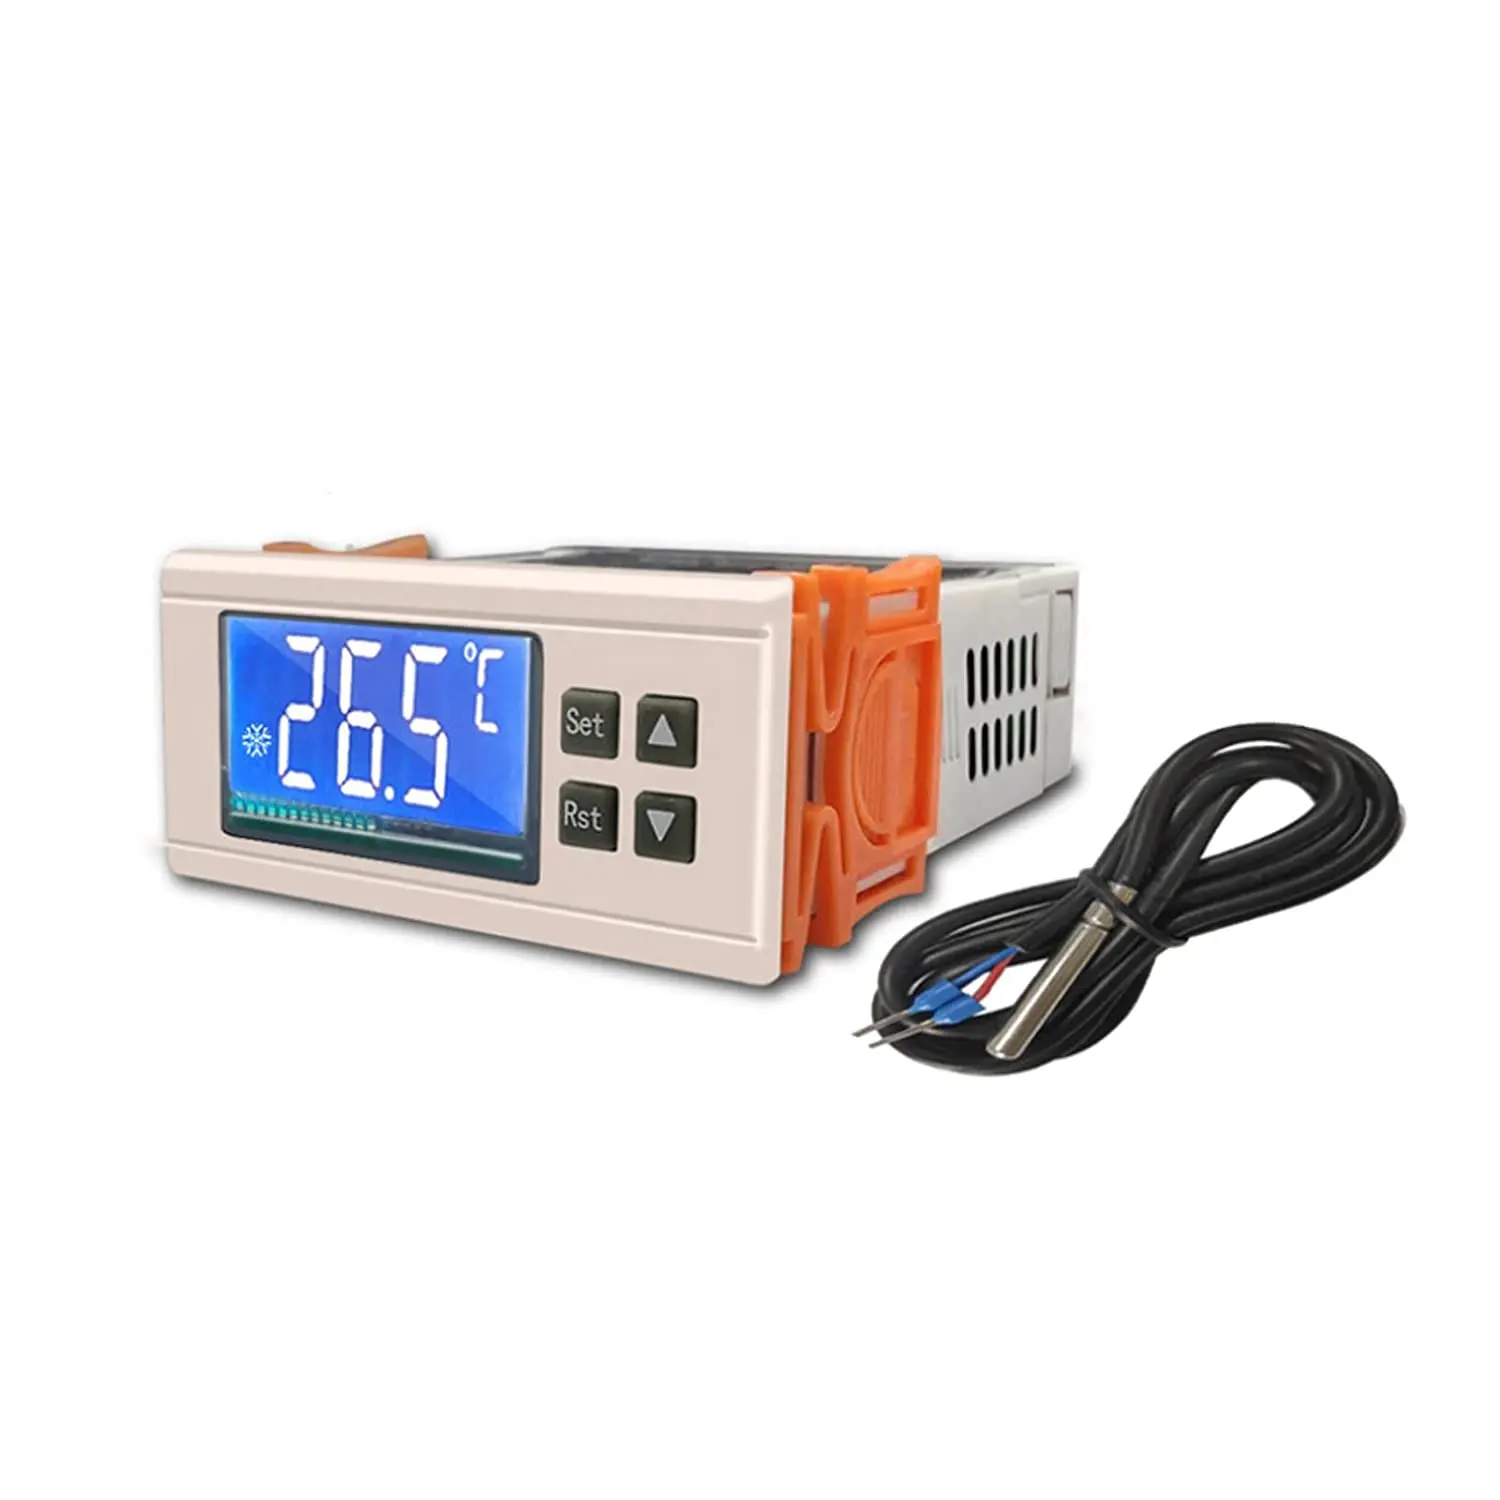 STC-8080A + controlador de temperatura digital controlador de temperatura, refrigeração inteligente, controle de temperatura termostato stc-8080a